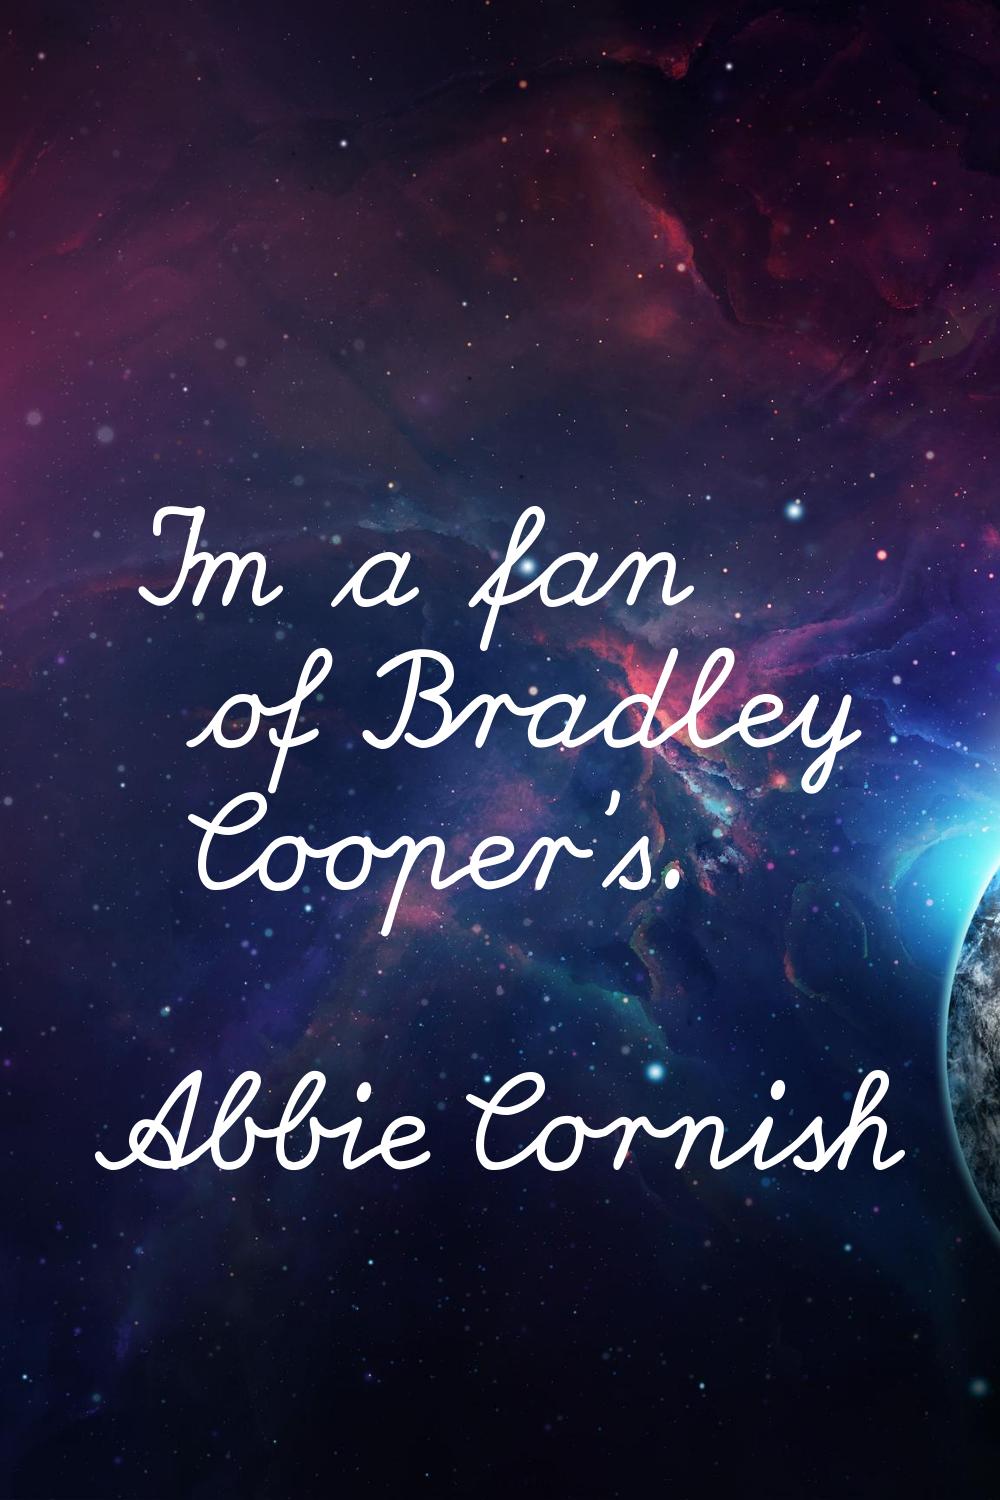 I'm a fan of Bradley Cooper's.